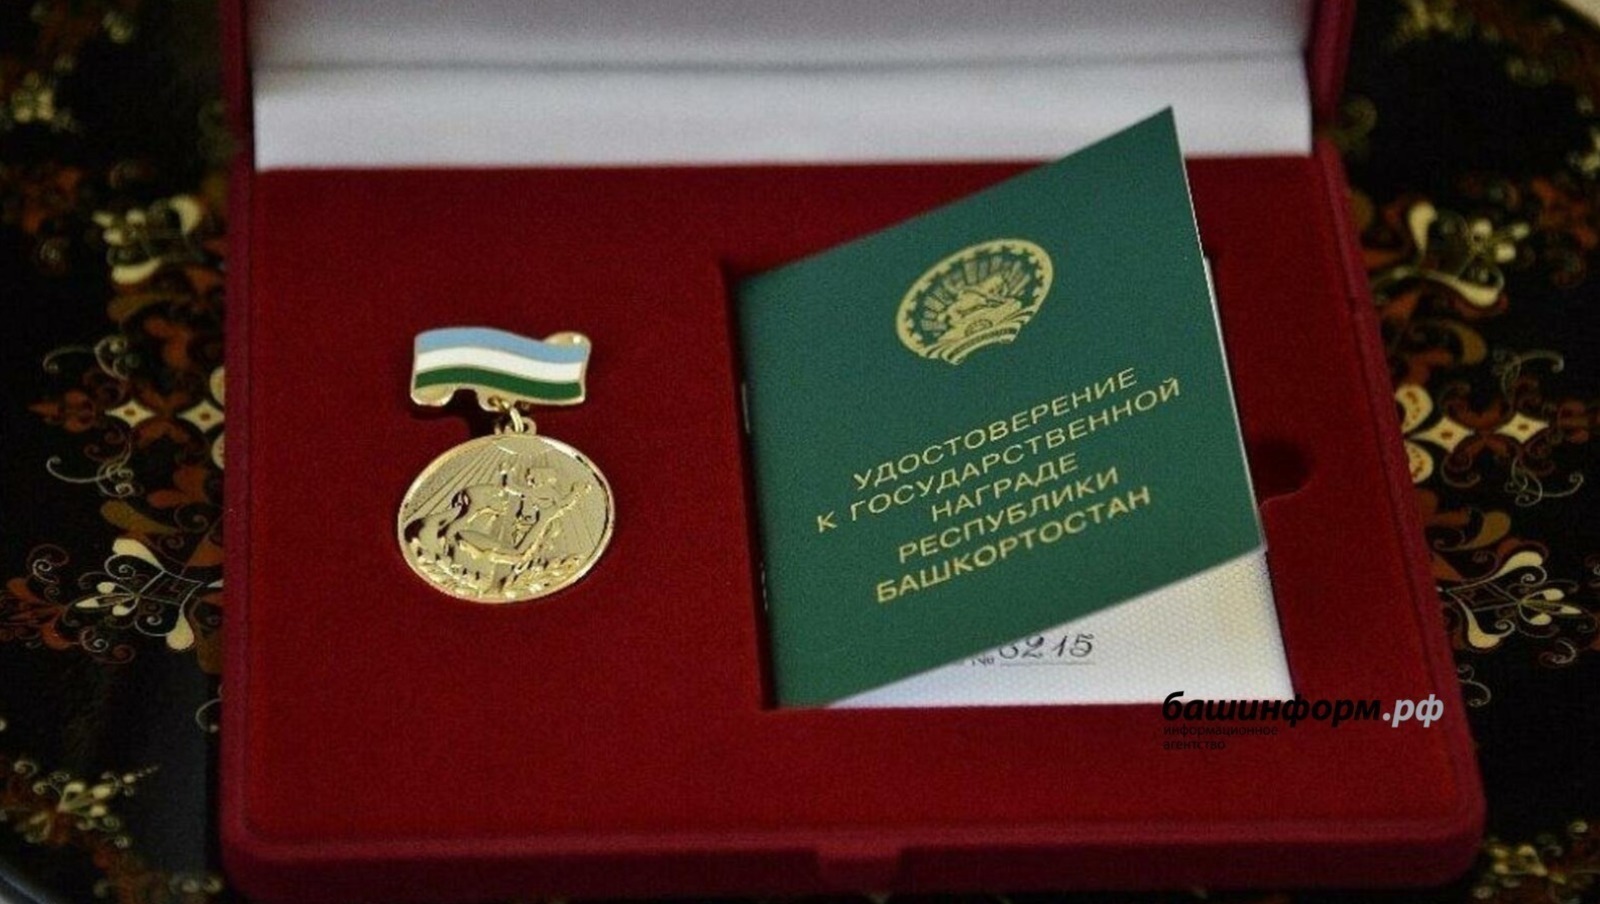 В Башкирии многодетных матерей будут награждать медалью "Материнская слава"